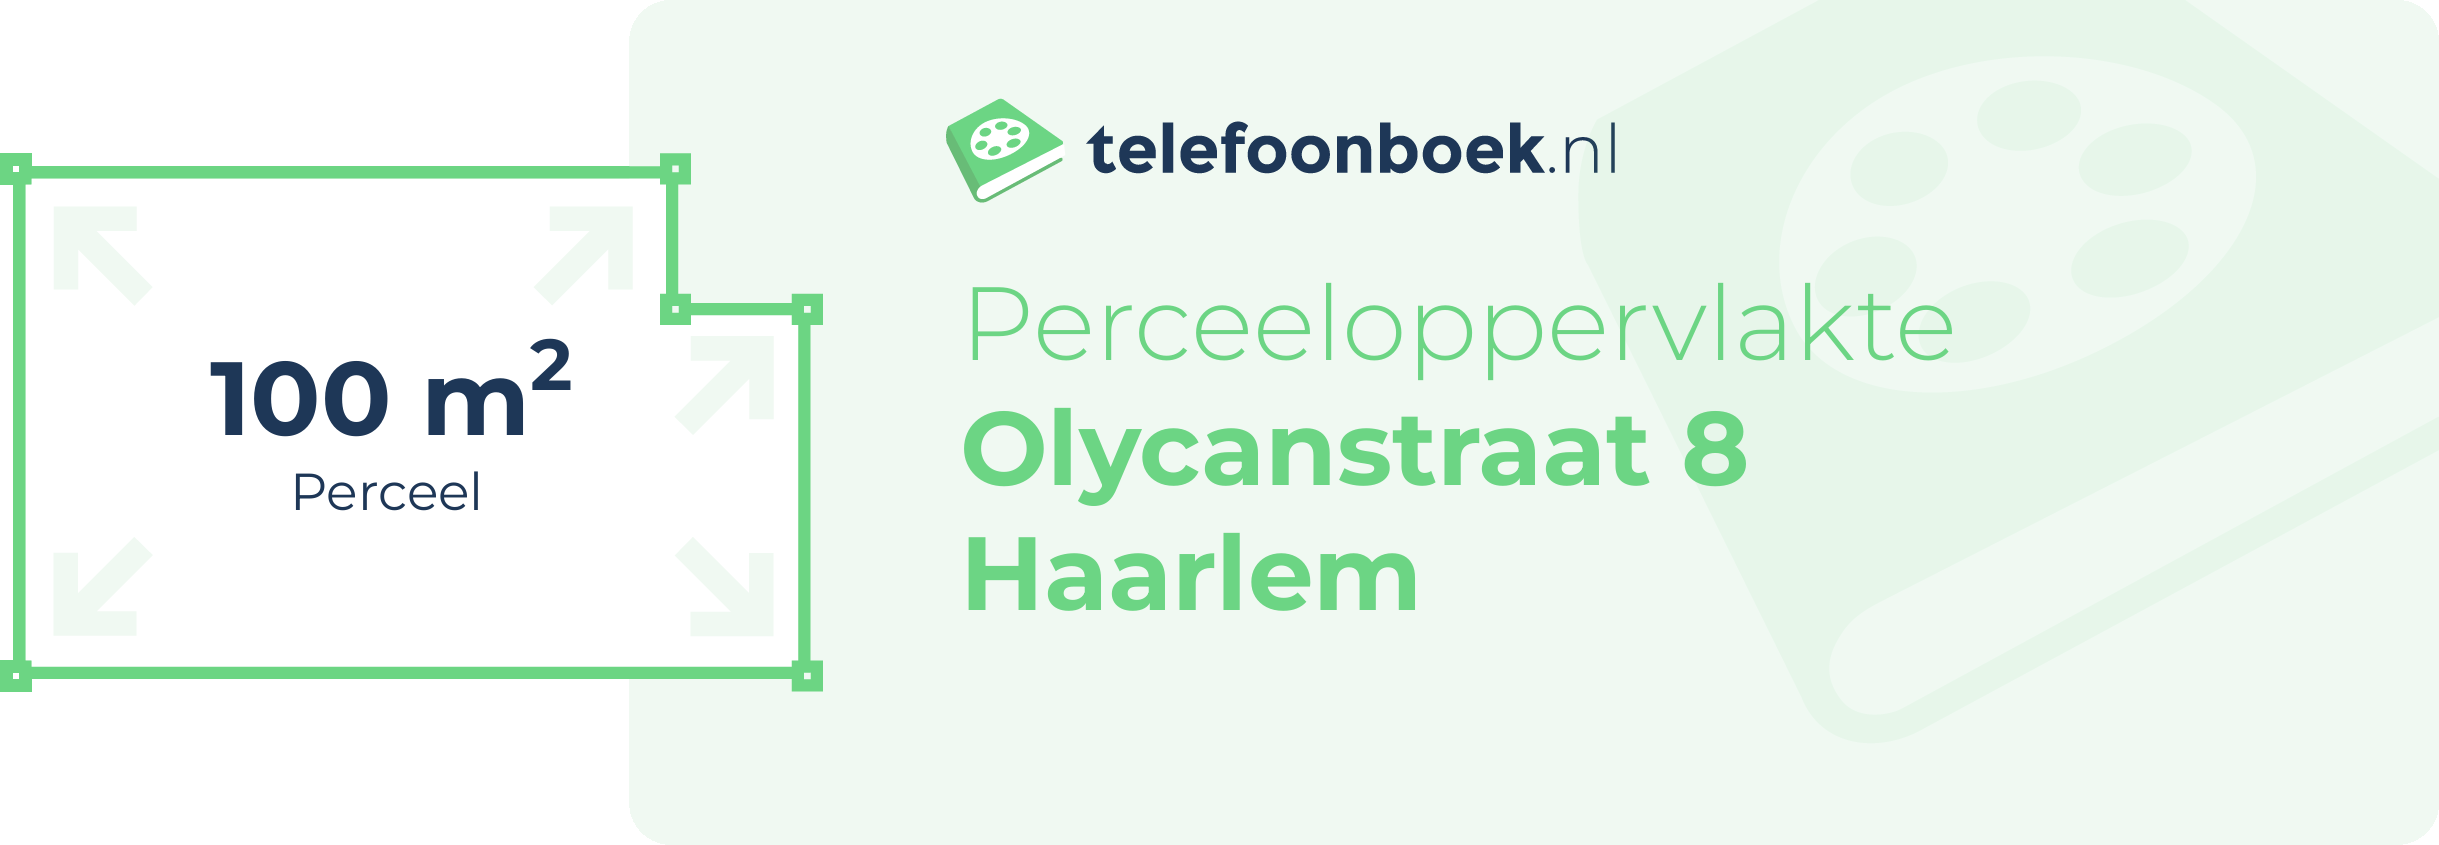 Perceeloppervlakte Olycanstraat 8 Haarlem